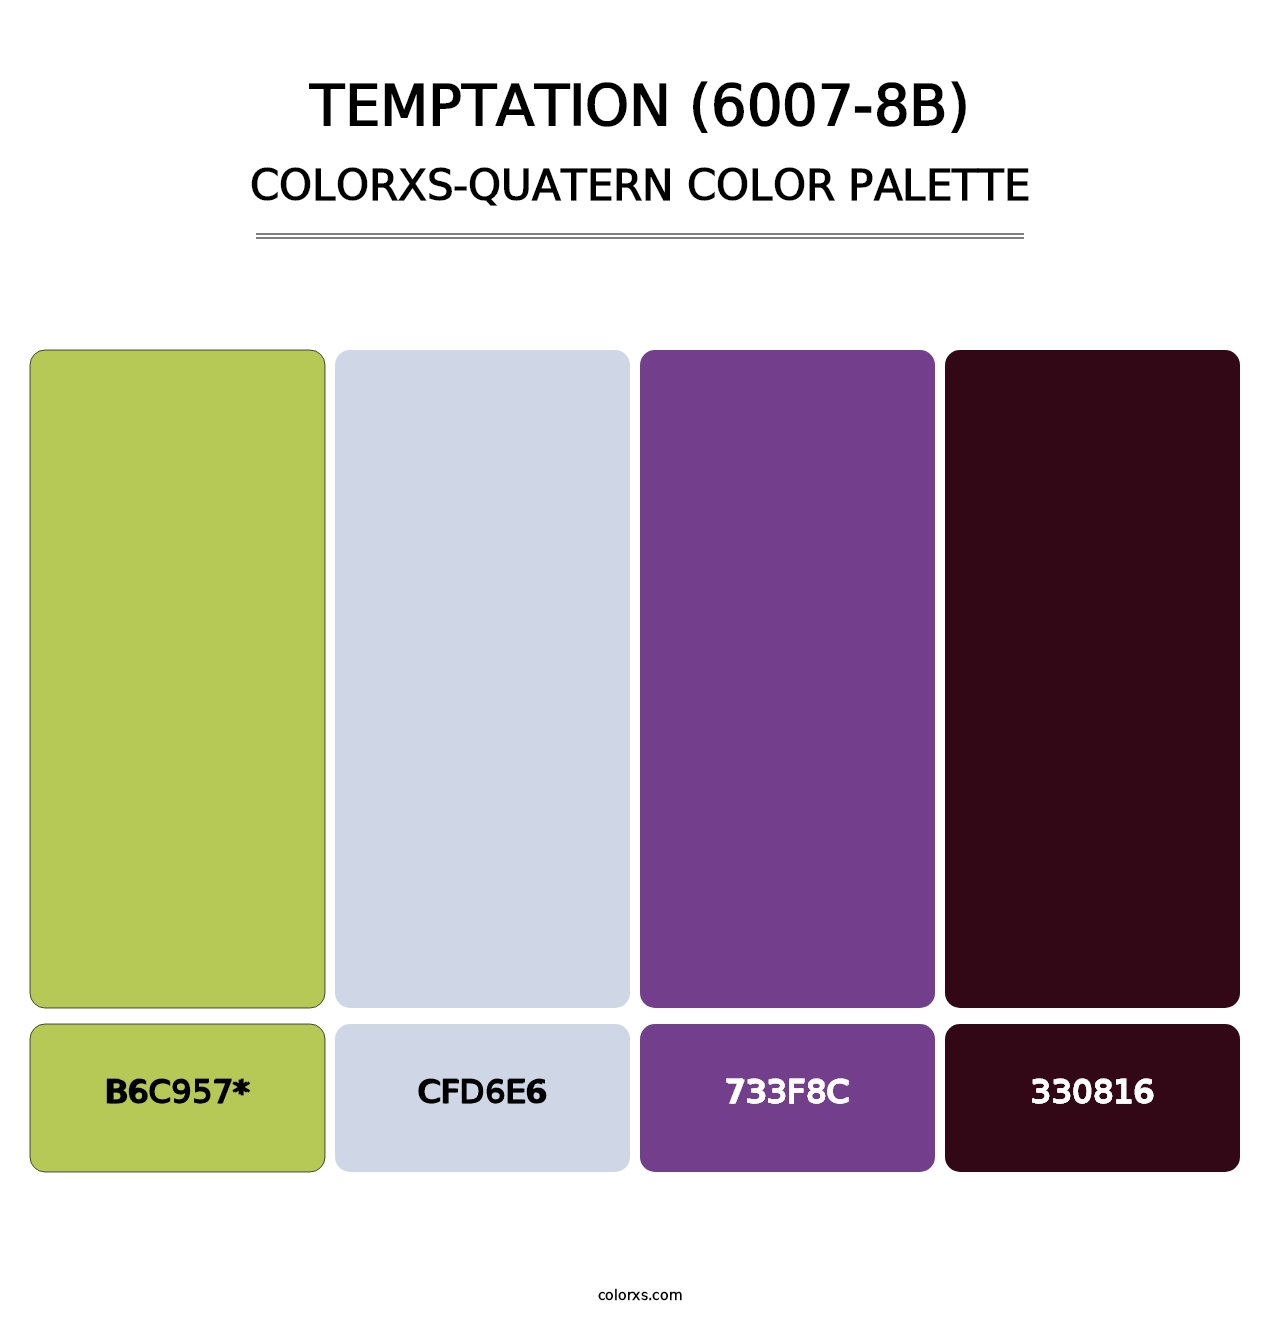 Temptation (6007-8B) - Colorxs Quatern Palette